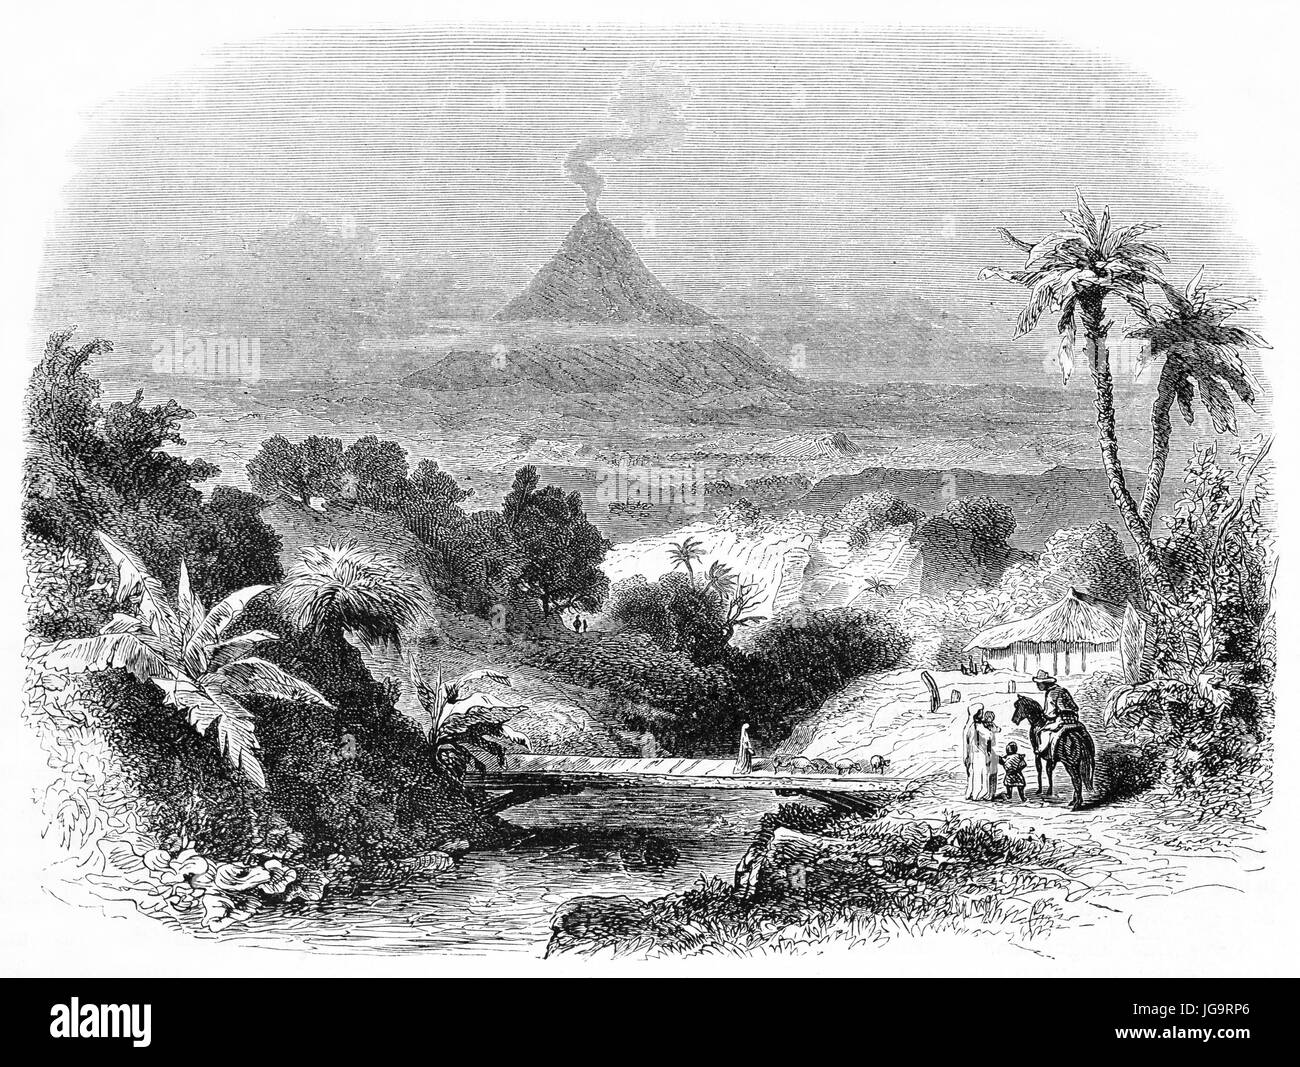 Paesaggio messicano con la vegetazione e il vulcano fumatori Pico de Orizaba in background distanza. Antica incisione in stile grigio di Francais, 1861 Foto Stock